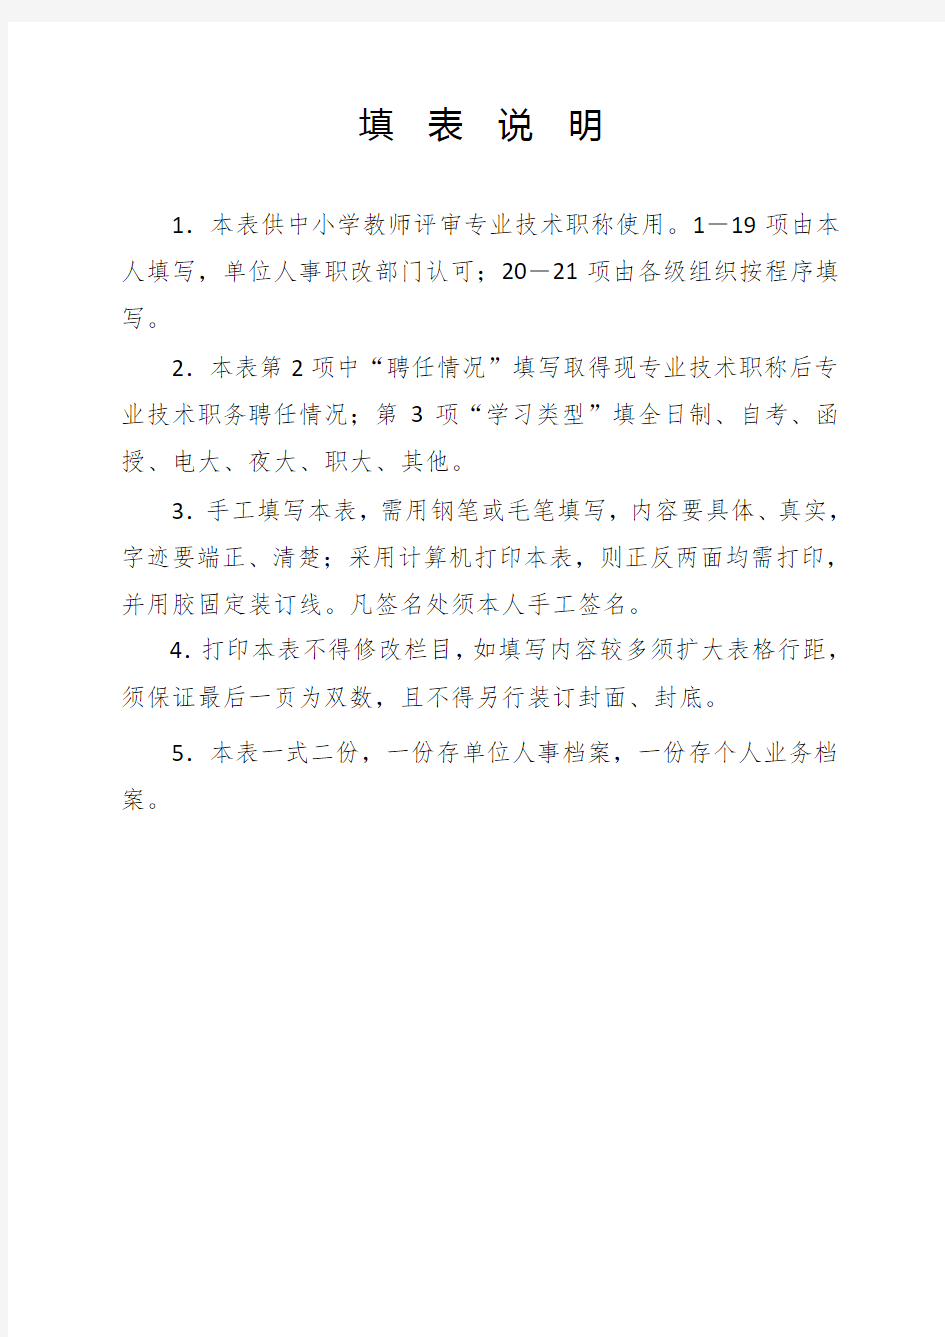 新张表湖南省中小学教师系列专业技术职称职务评审表